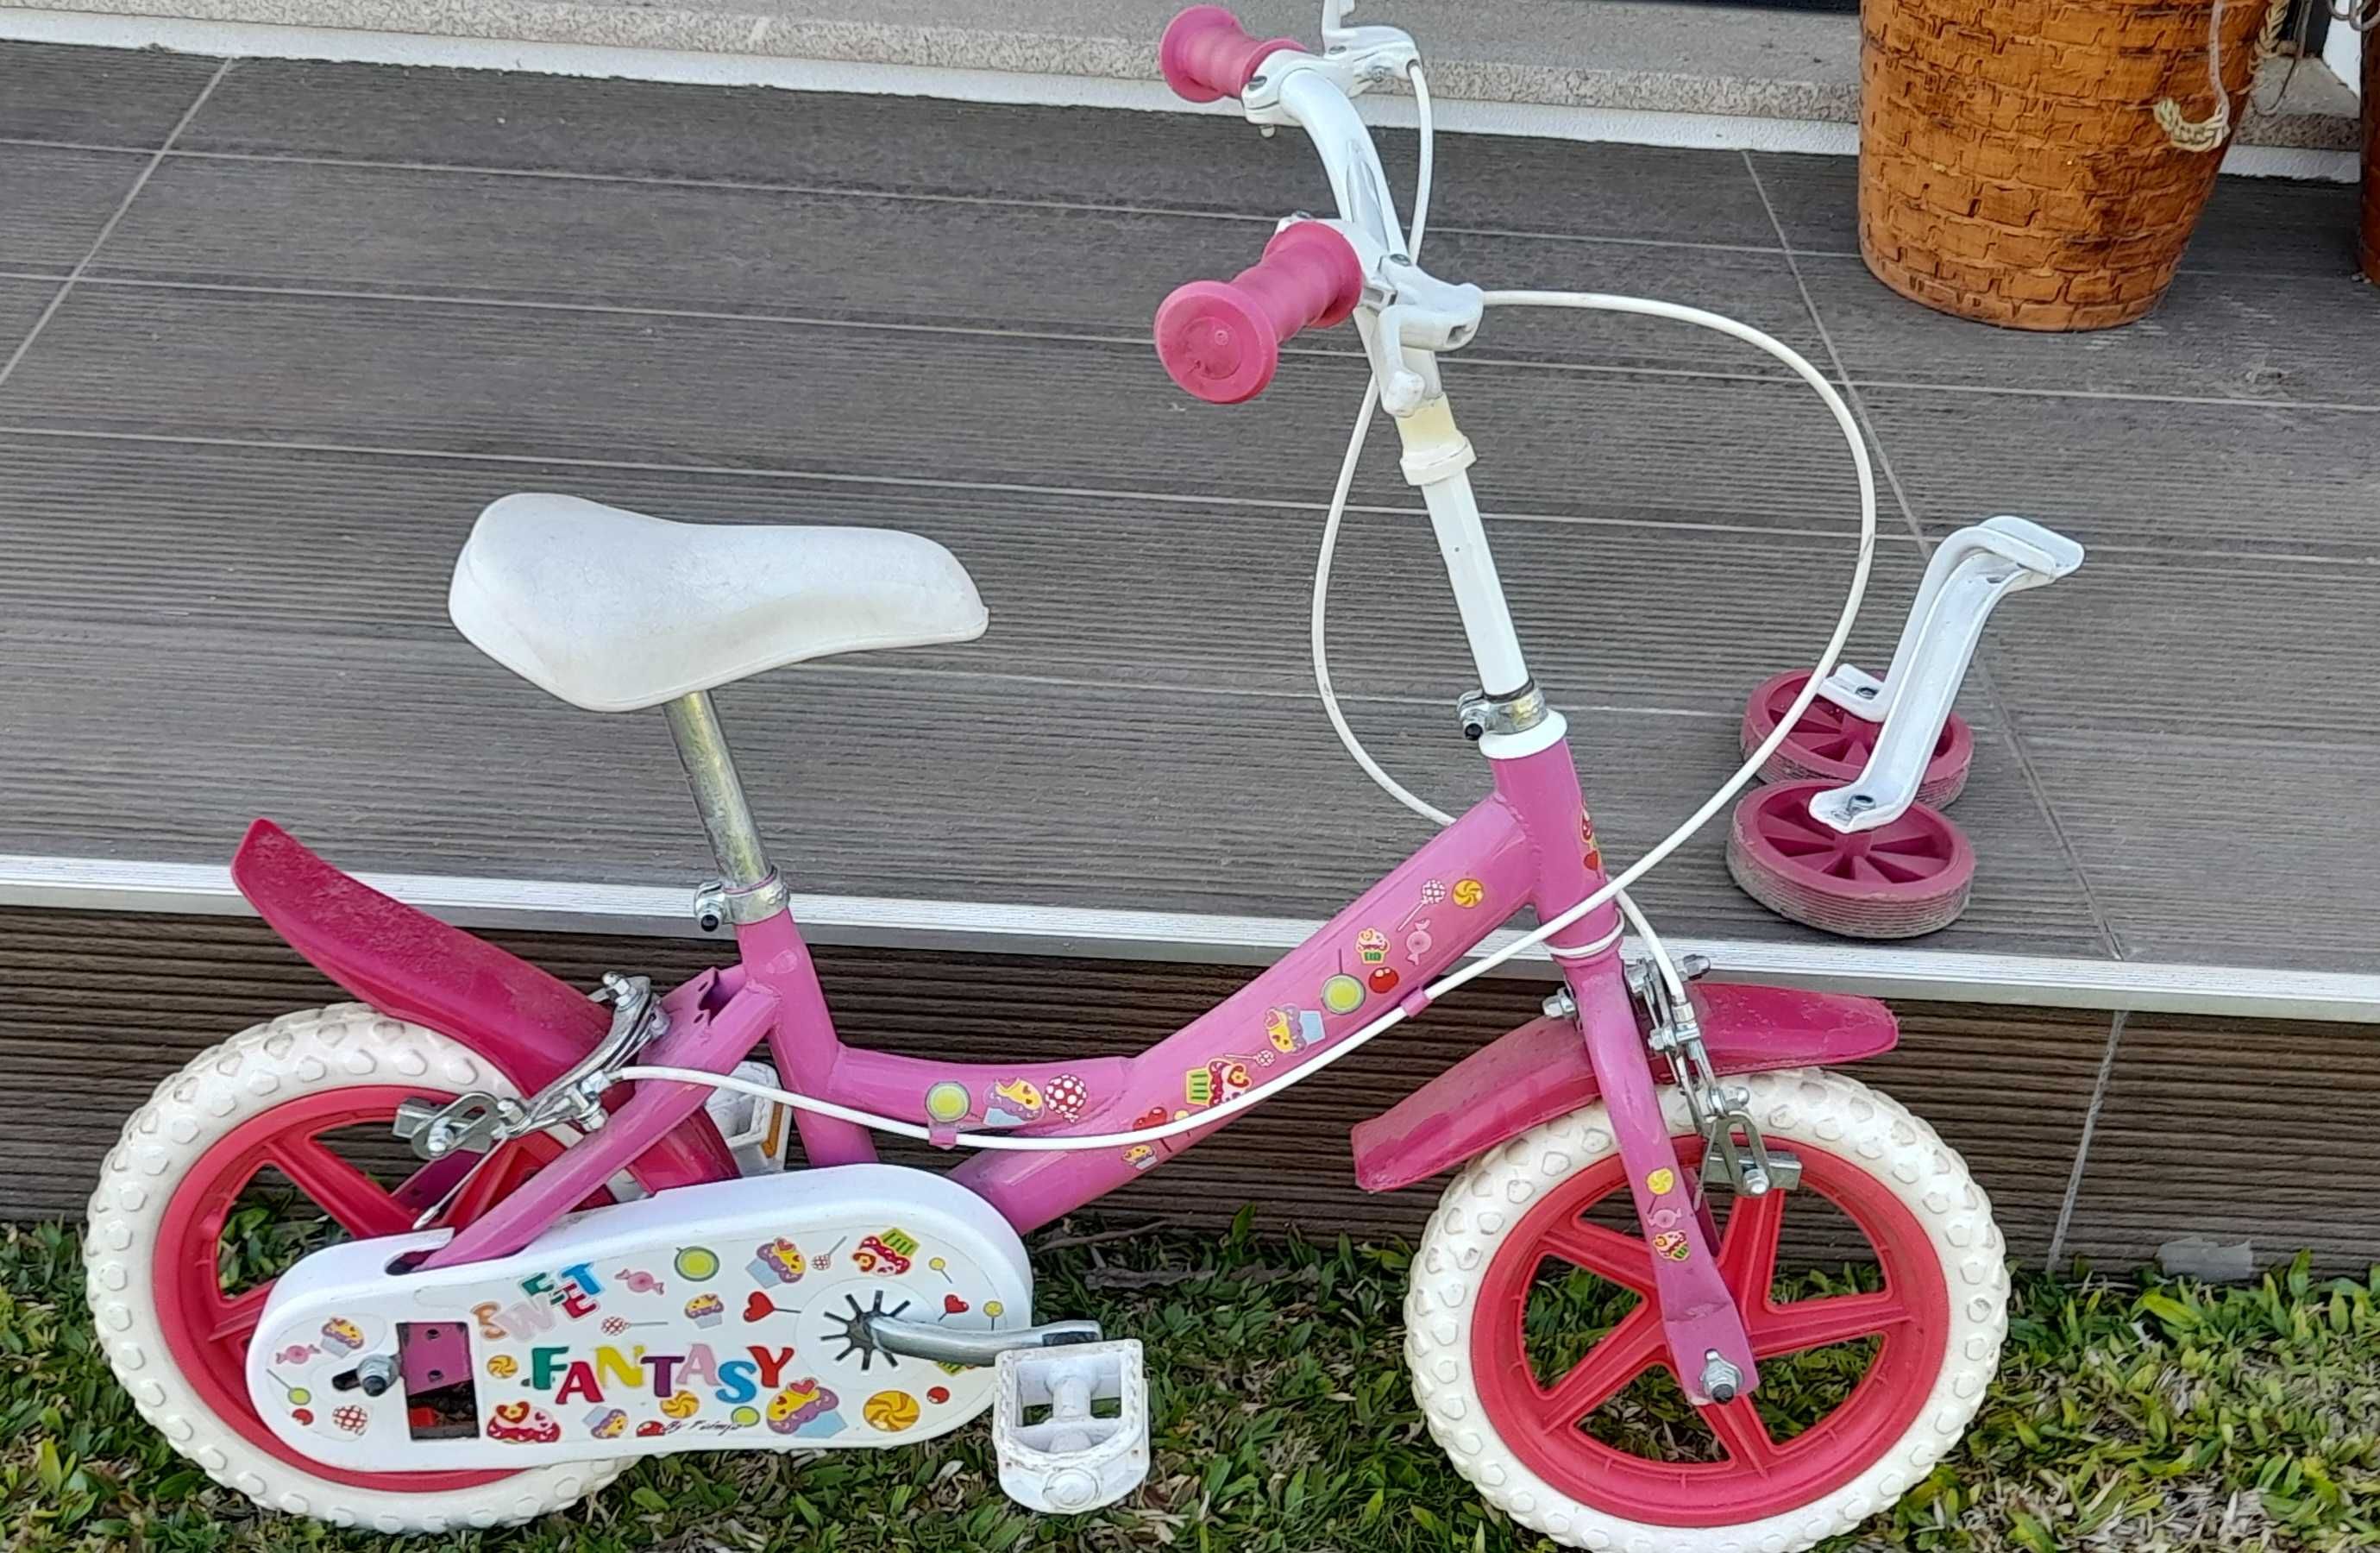 Bicicleta de menina.